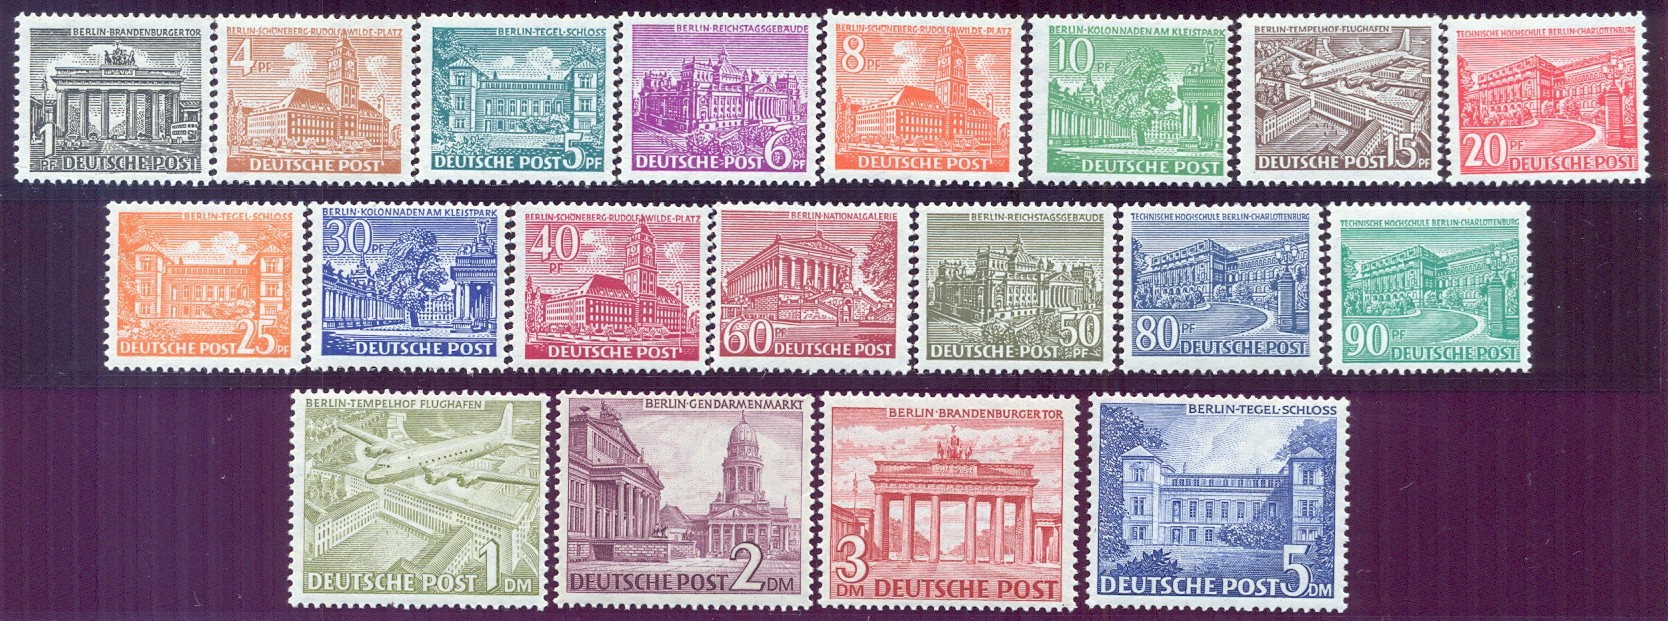 Monumenti di Berlino - serie completa di 19 francobolli, nuovi e perfetti, con certificato di garanzia.